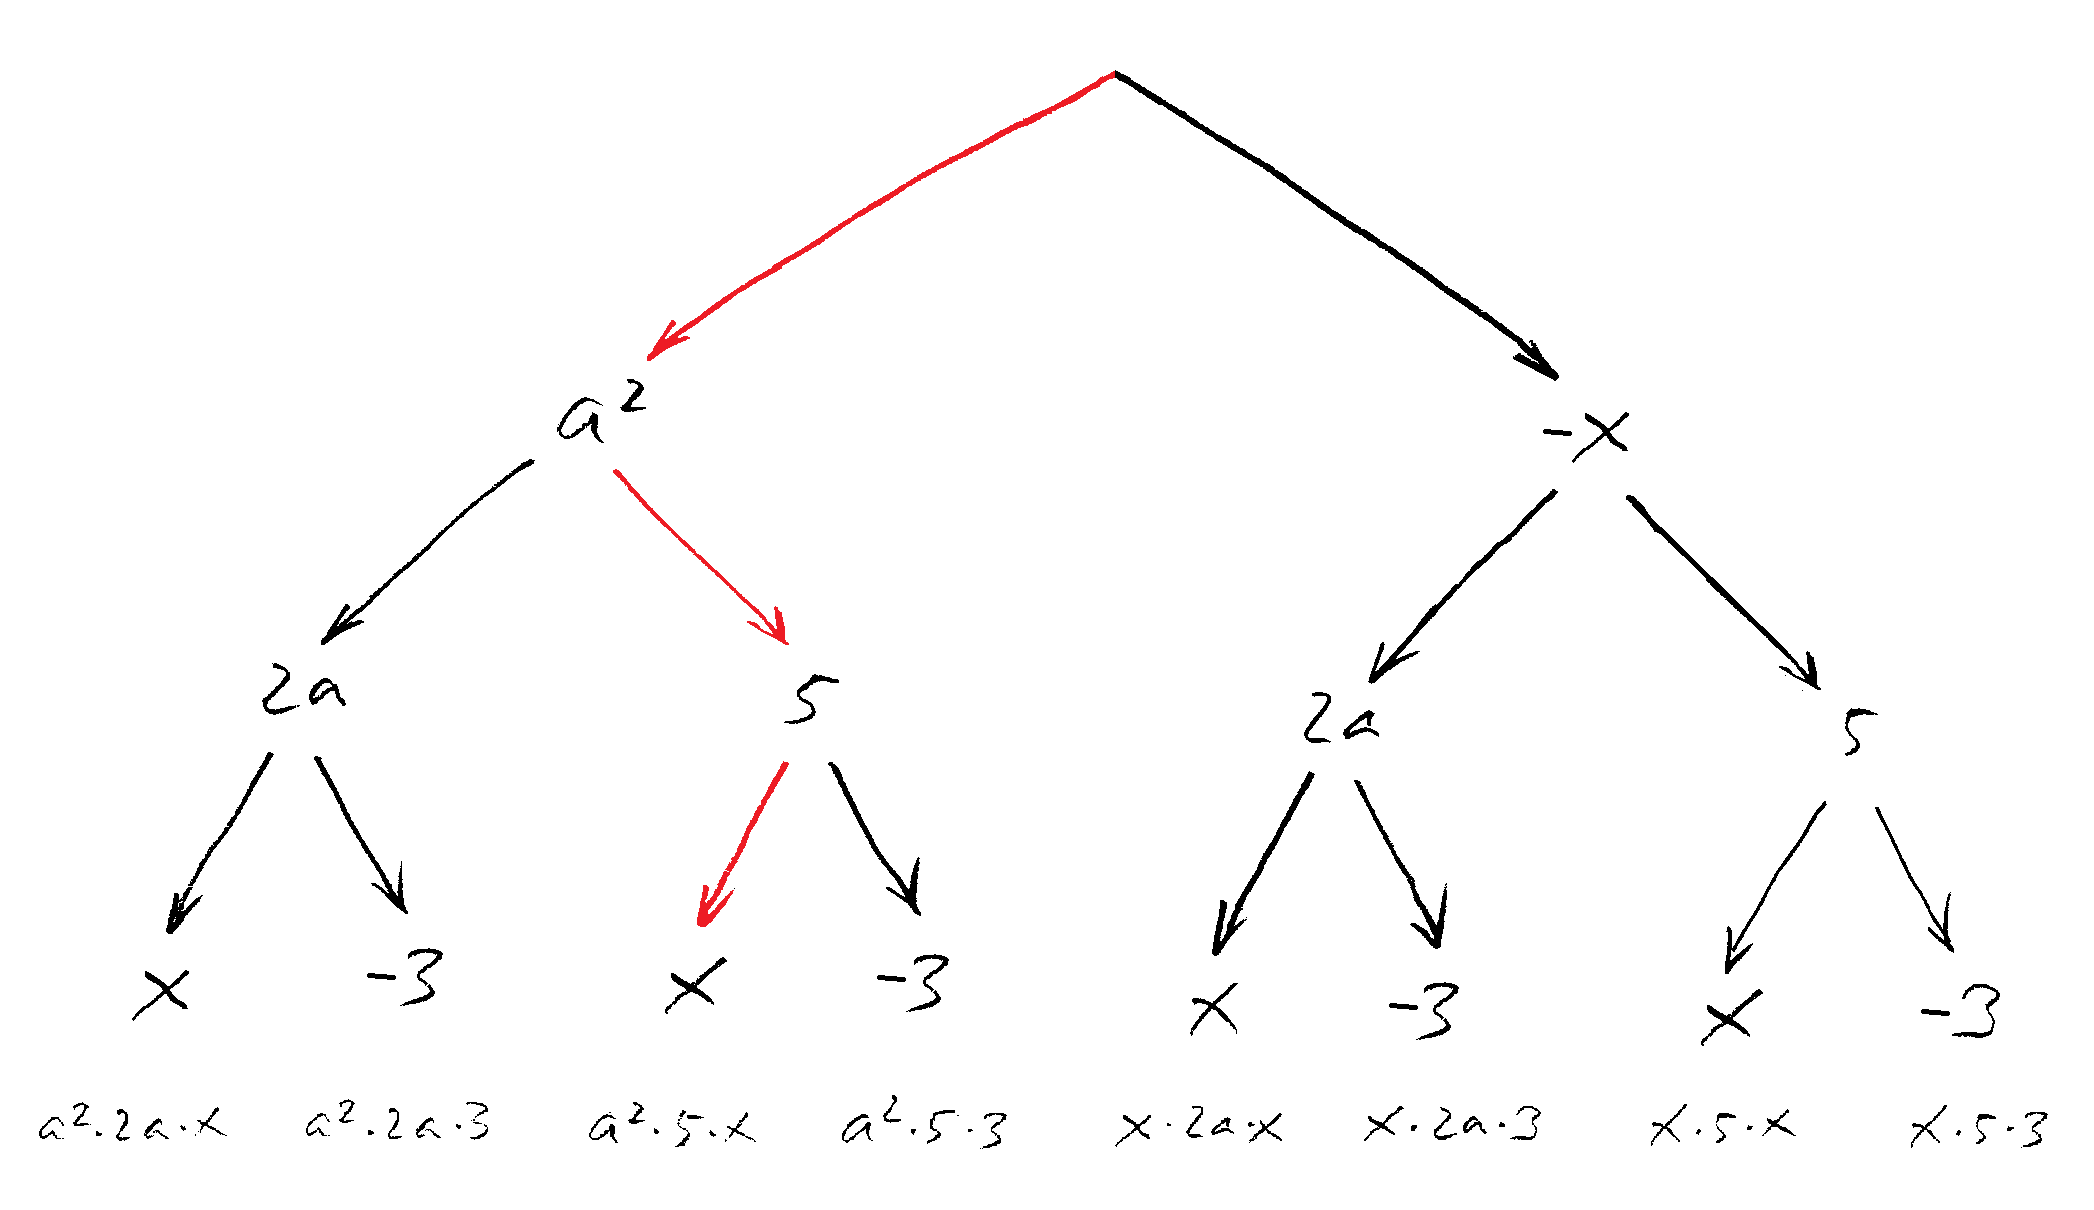 Baum-Schema für das dritte Beispiel